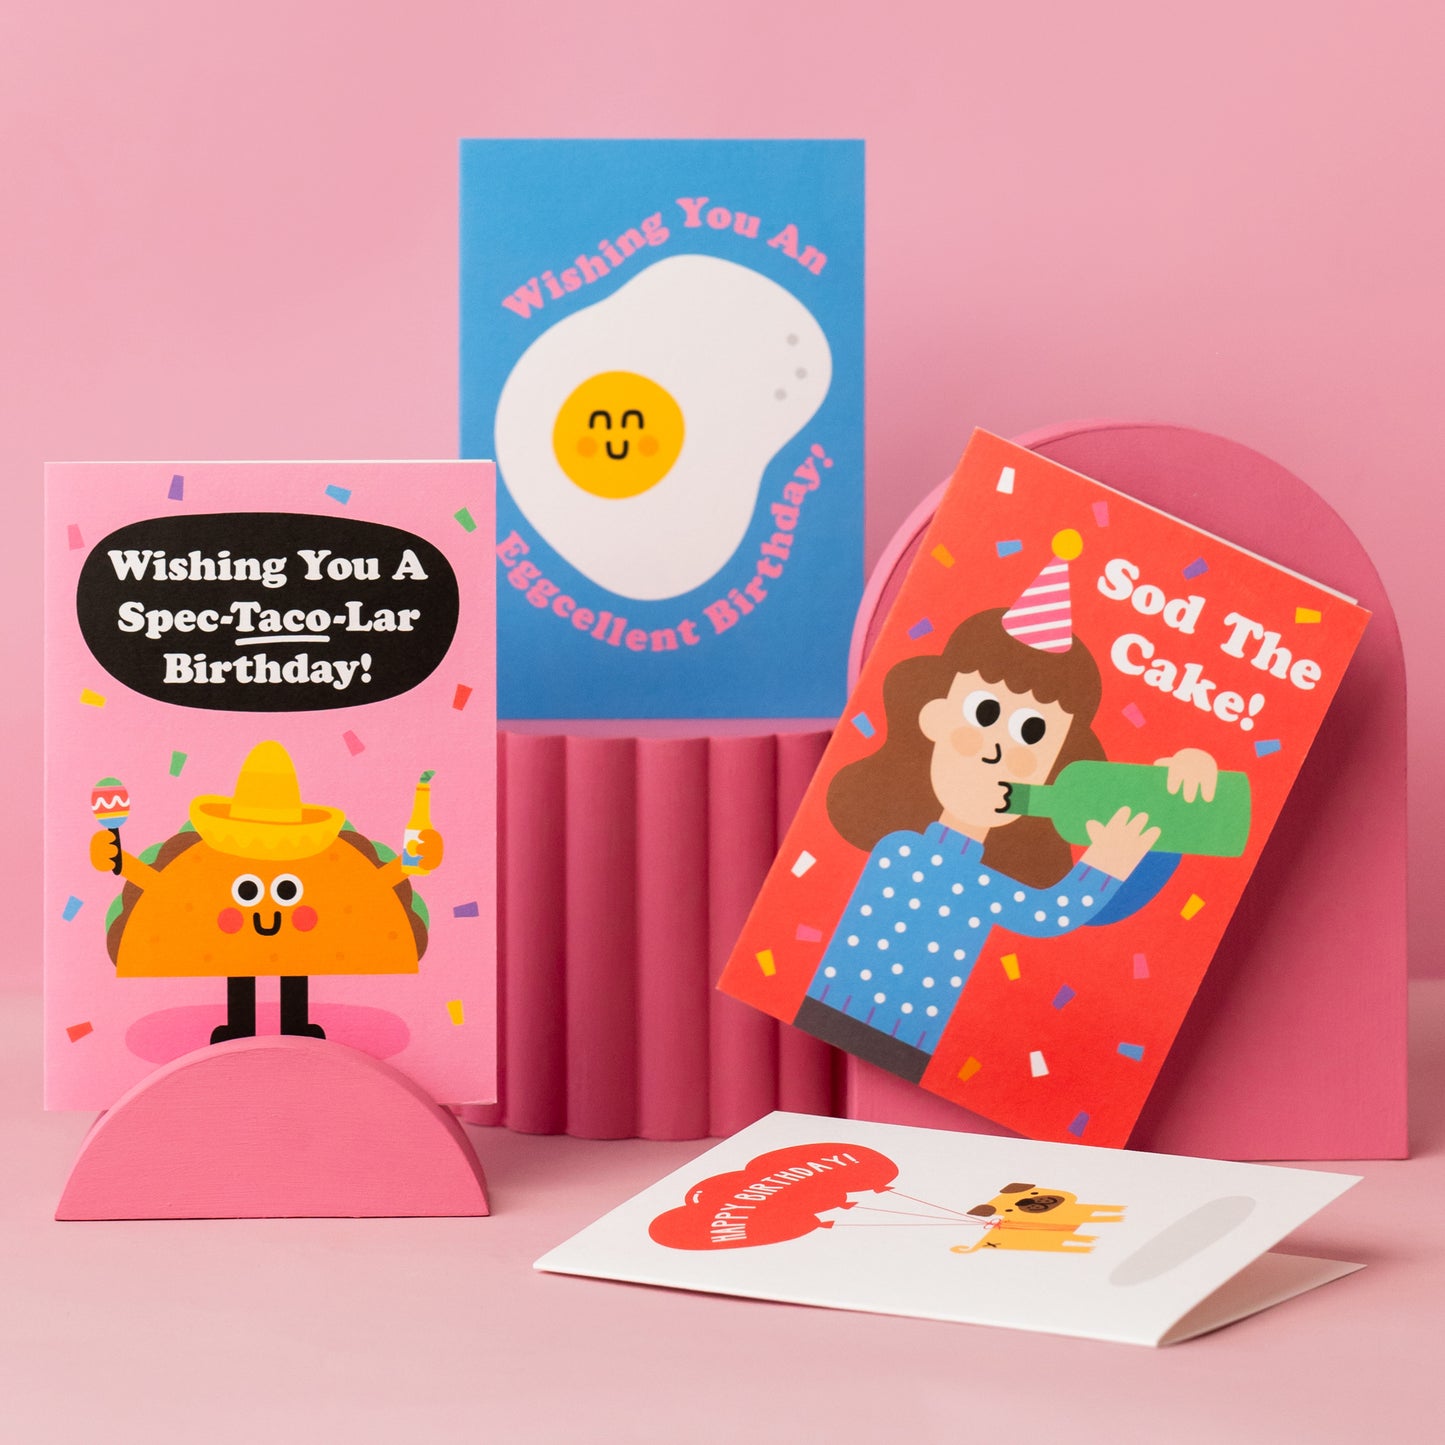 Love Ewe Valentines Card